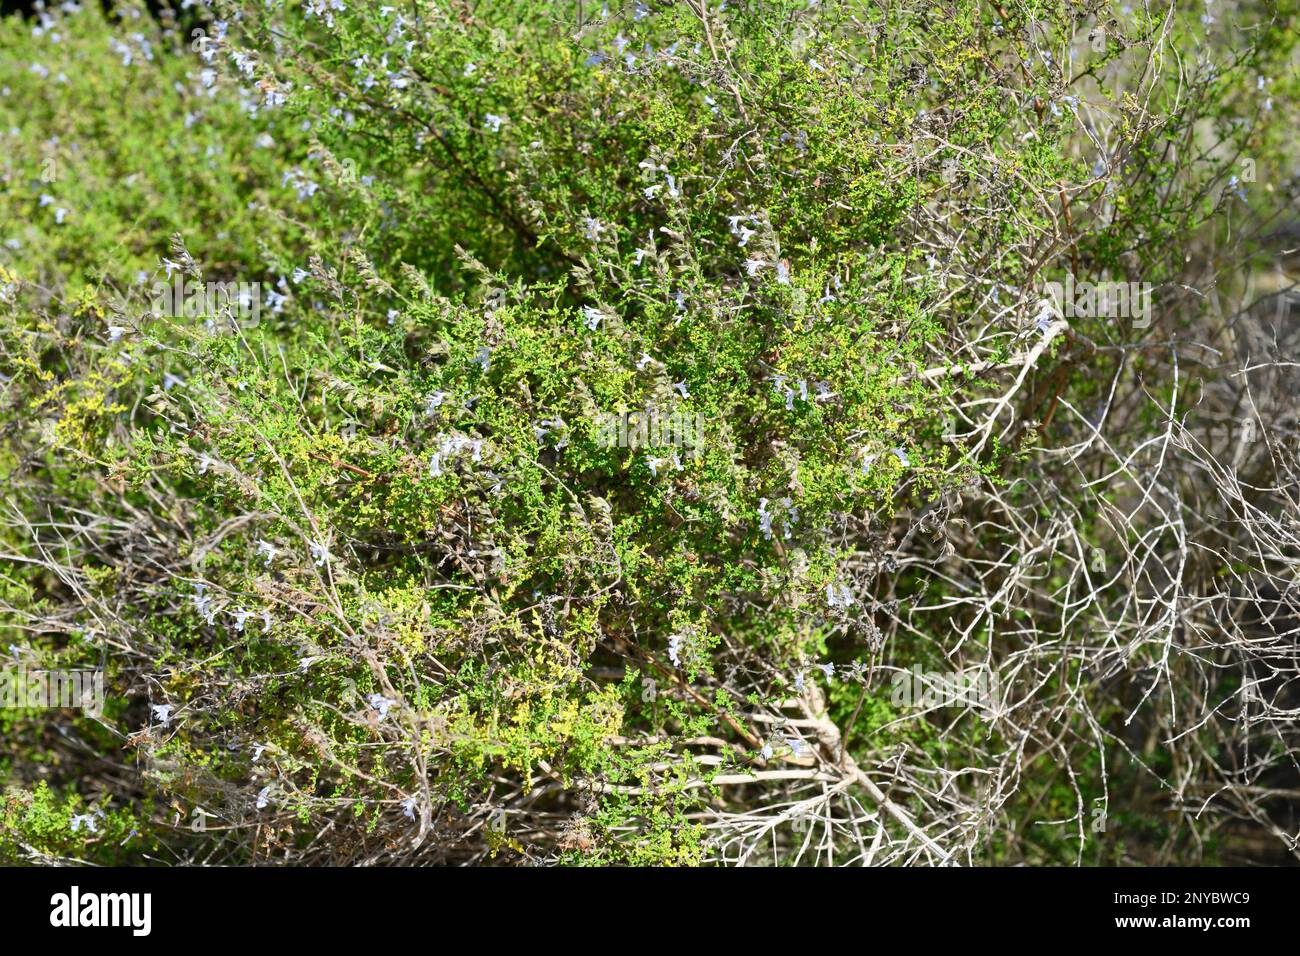 La salvia nama (Salvia namaensis) es un arbusto de hoja perenne nativo del sur de África. Foto de stock